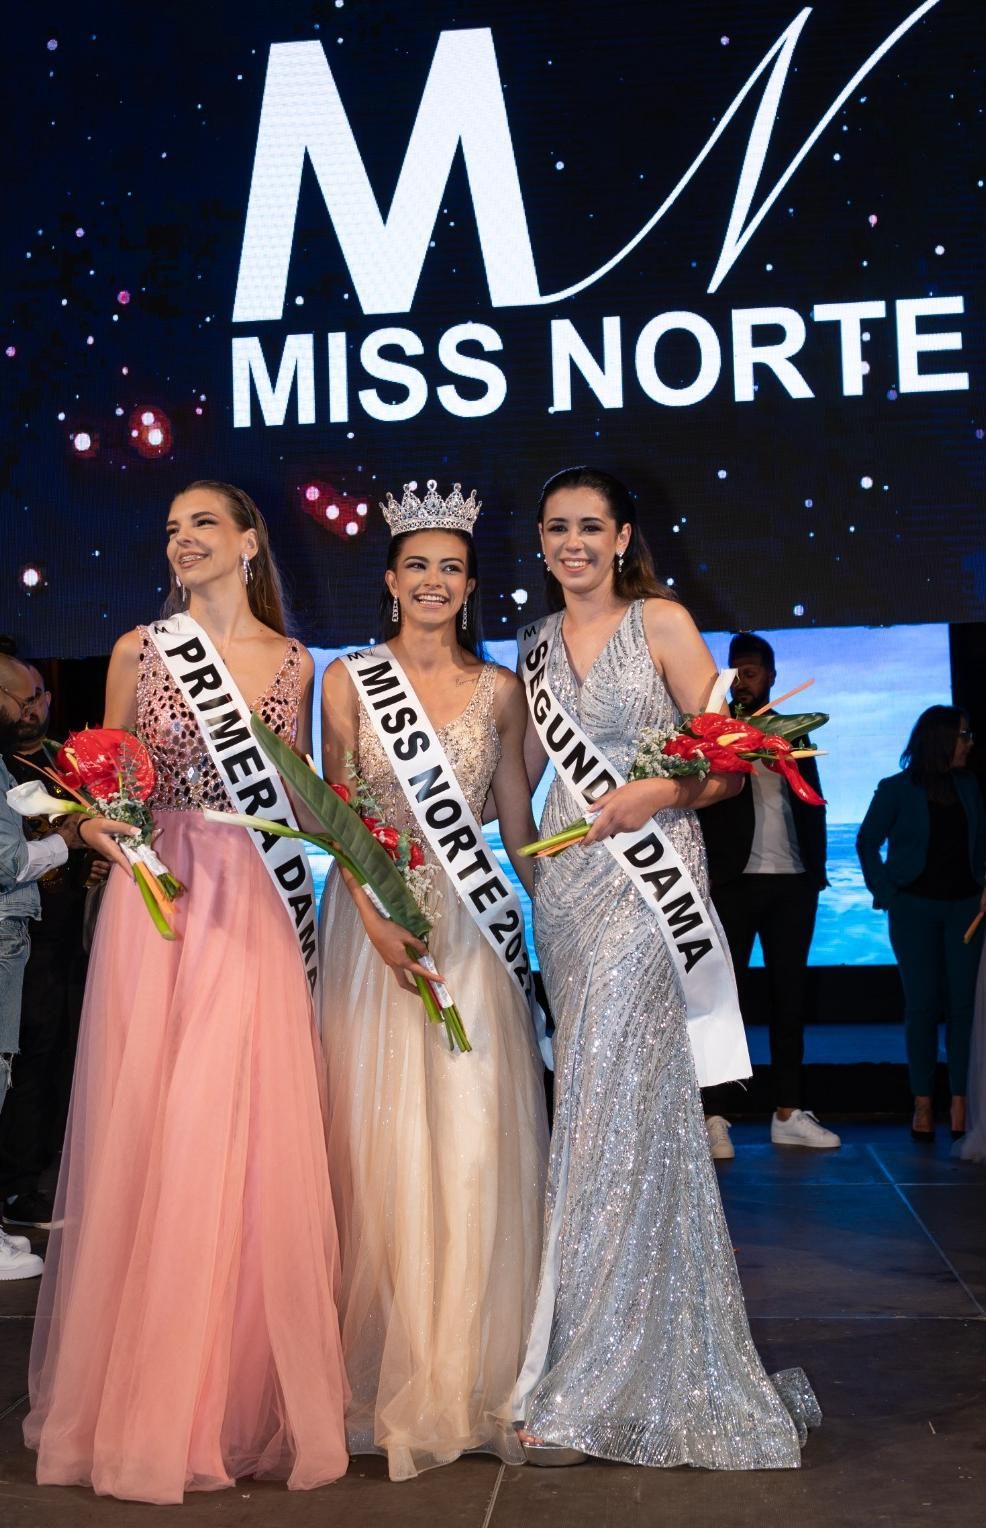 La nueva Miss Norte 2022 acompañada de la primera y segunda damas